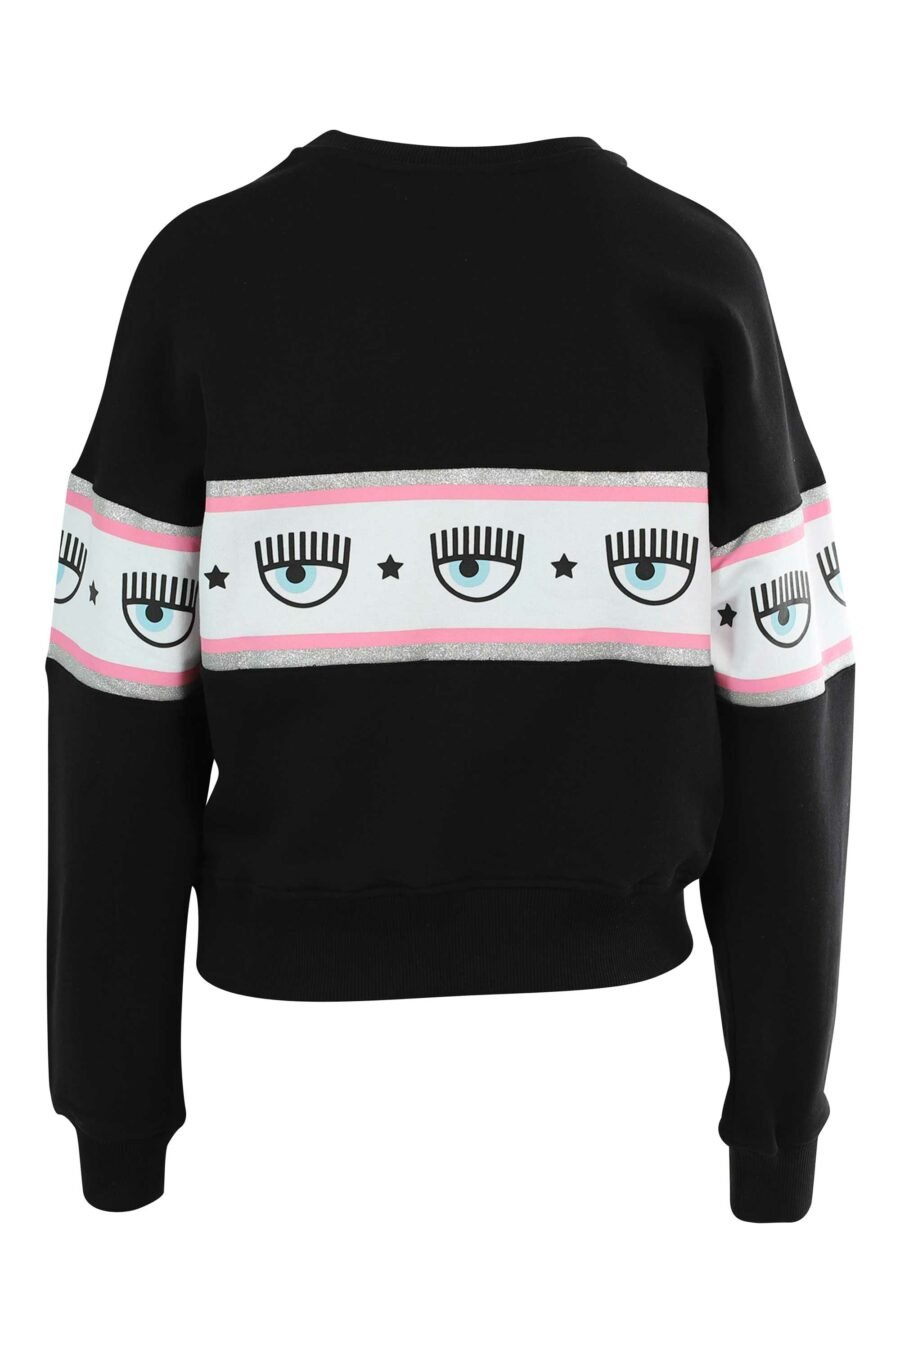 Schwarzes Sweatshirt mit Eye-Logo auf Band - 8052672420329 3